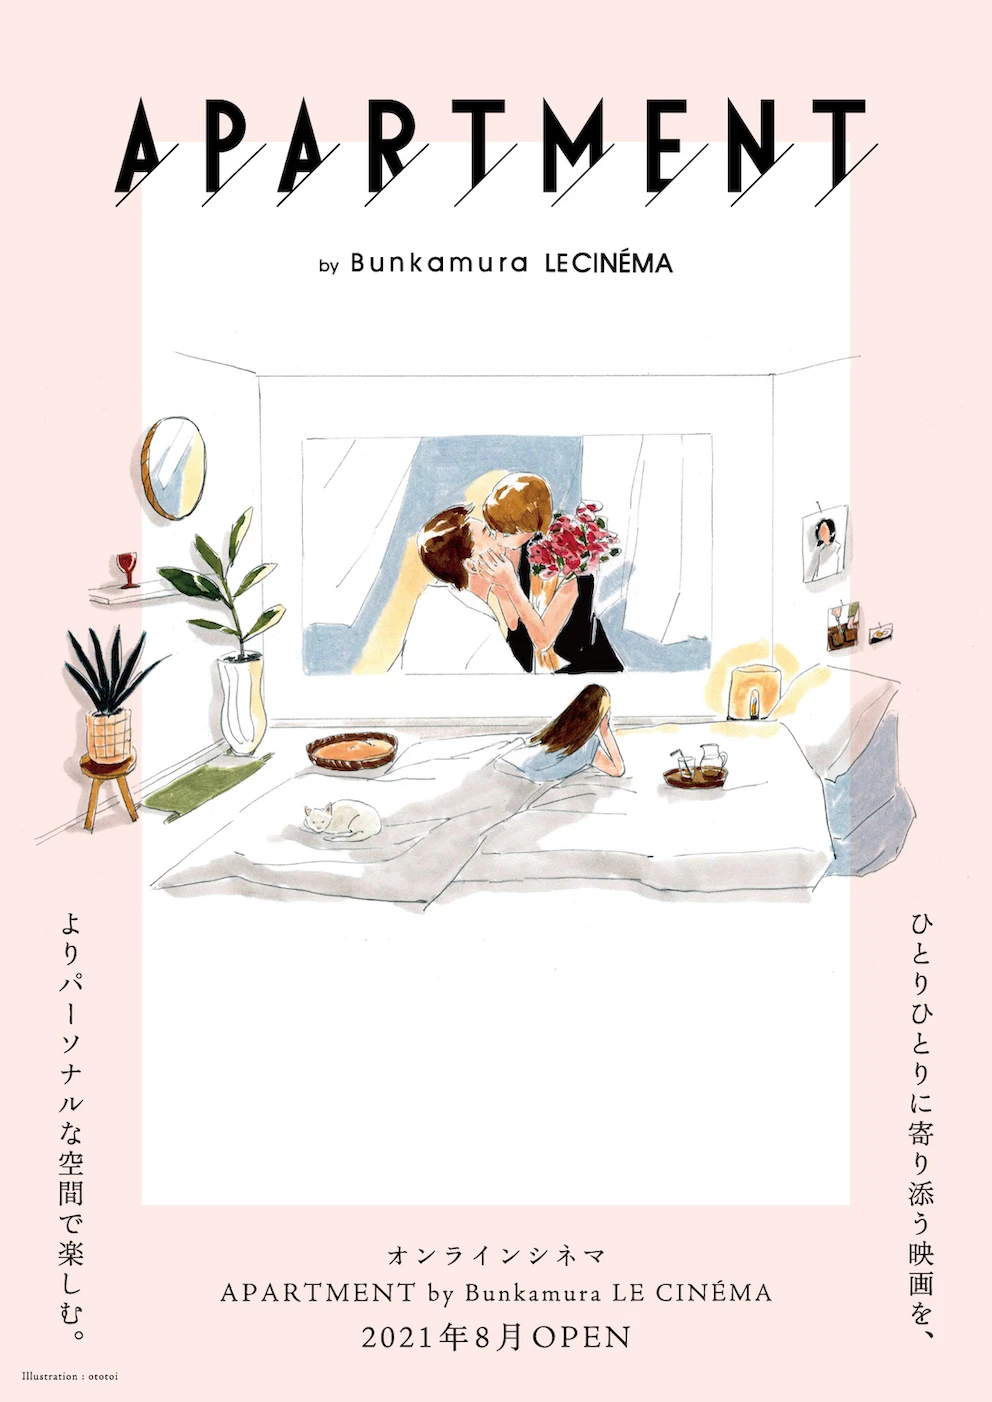 渋谷のミニシアター「Bunkamuraル・シネマ」がオンライン映画館オープン